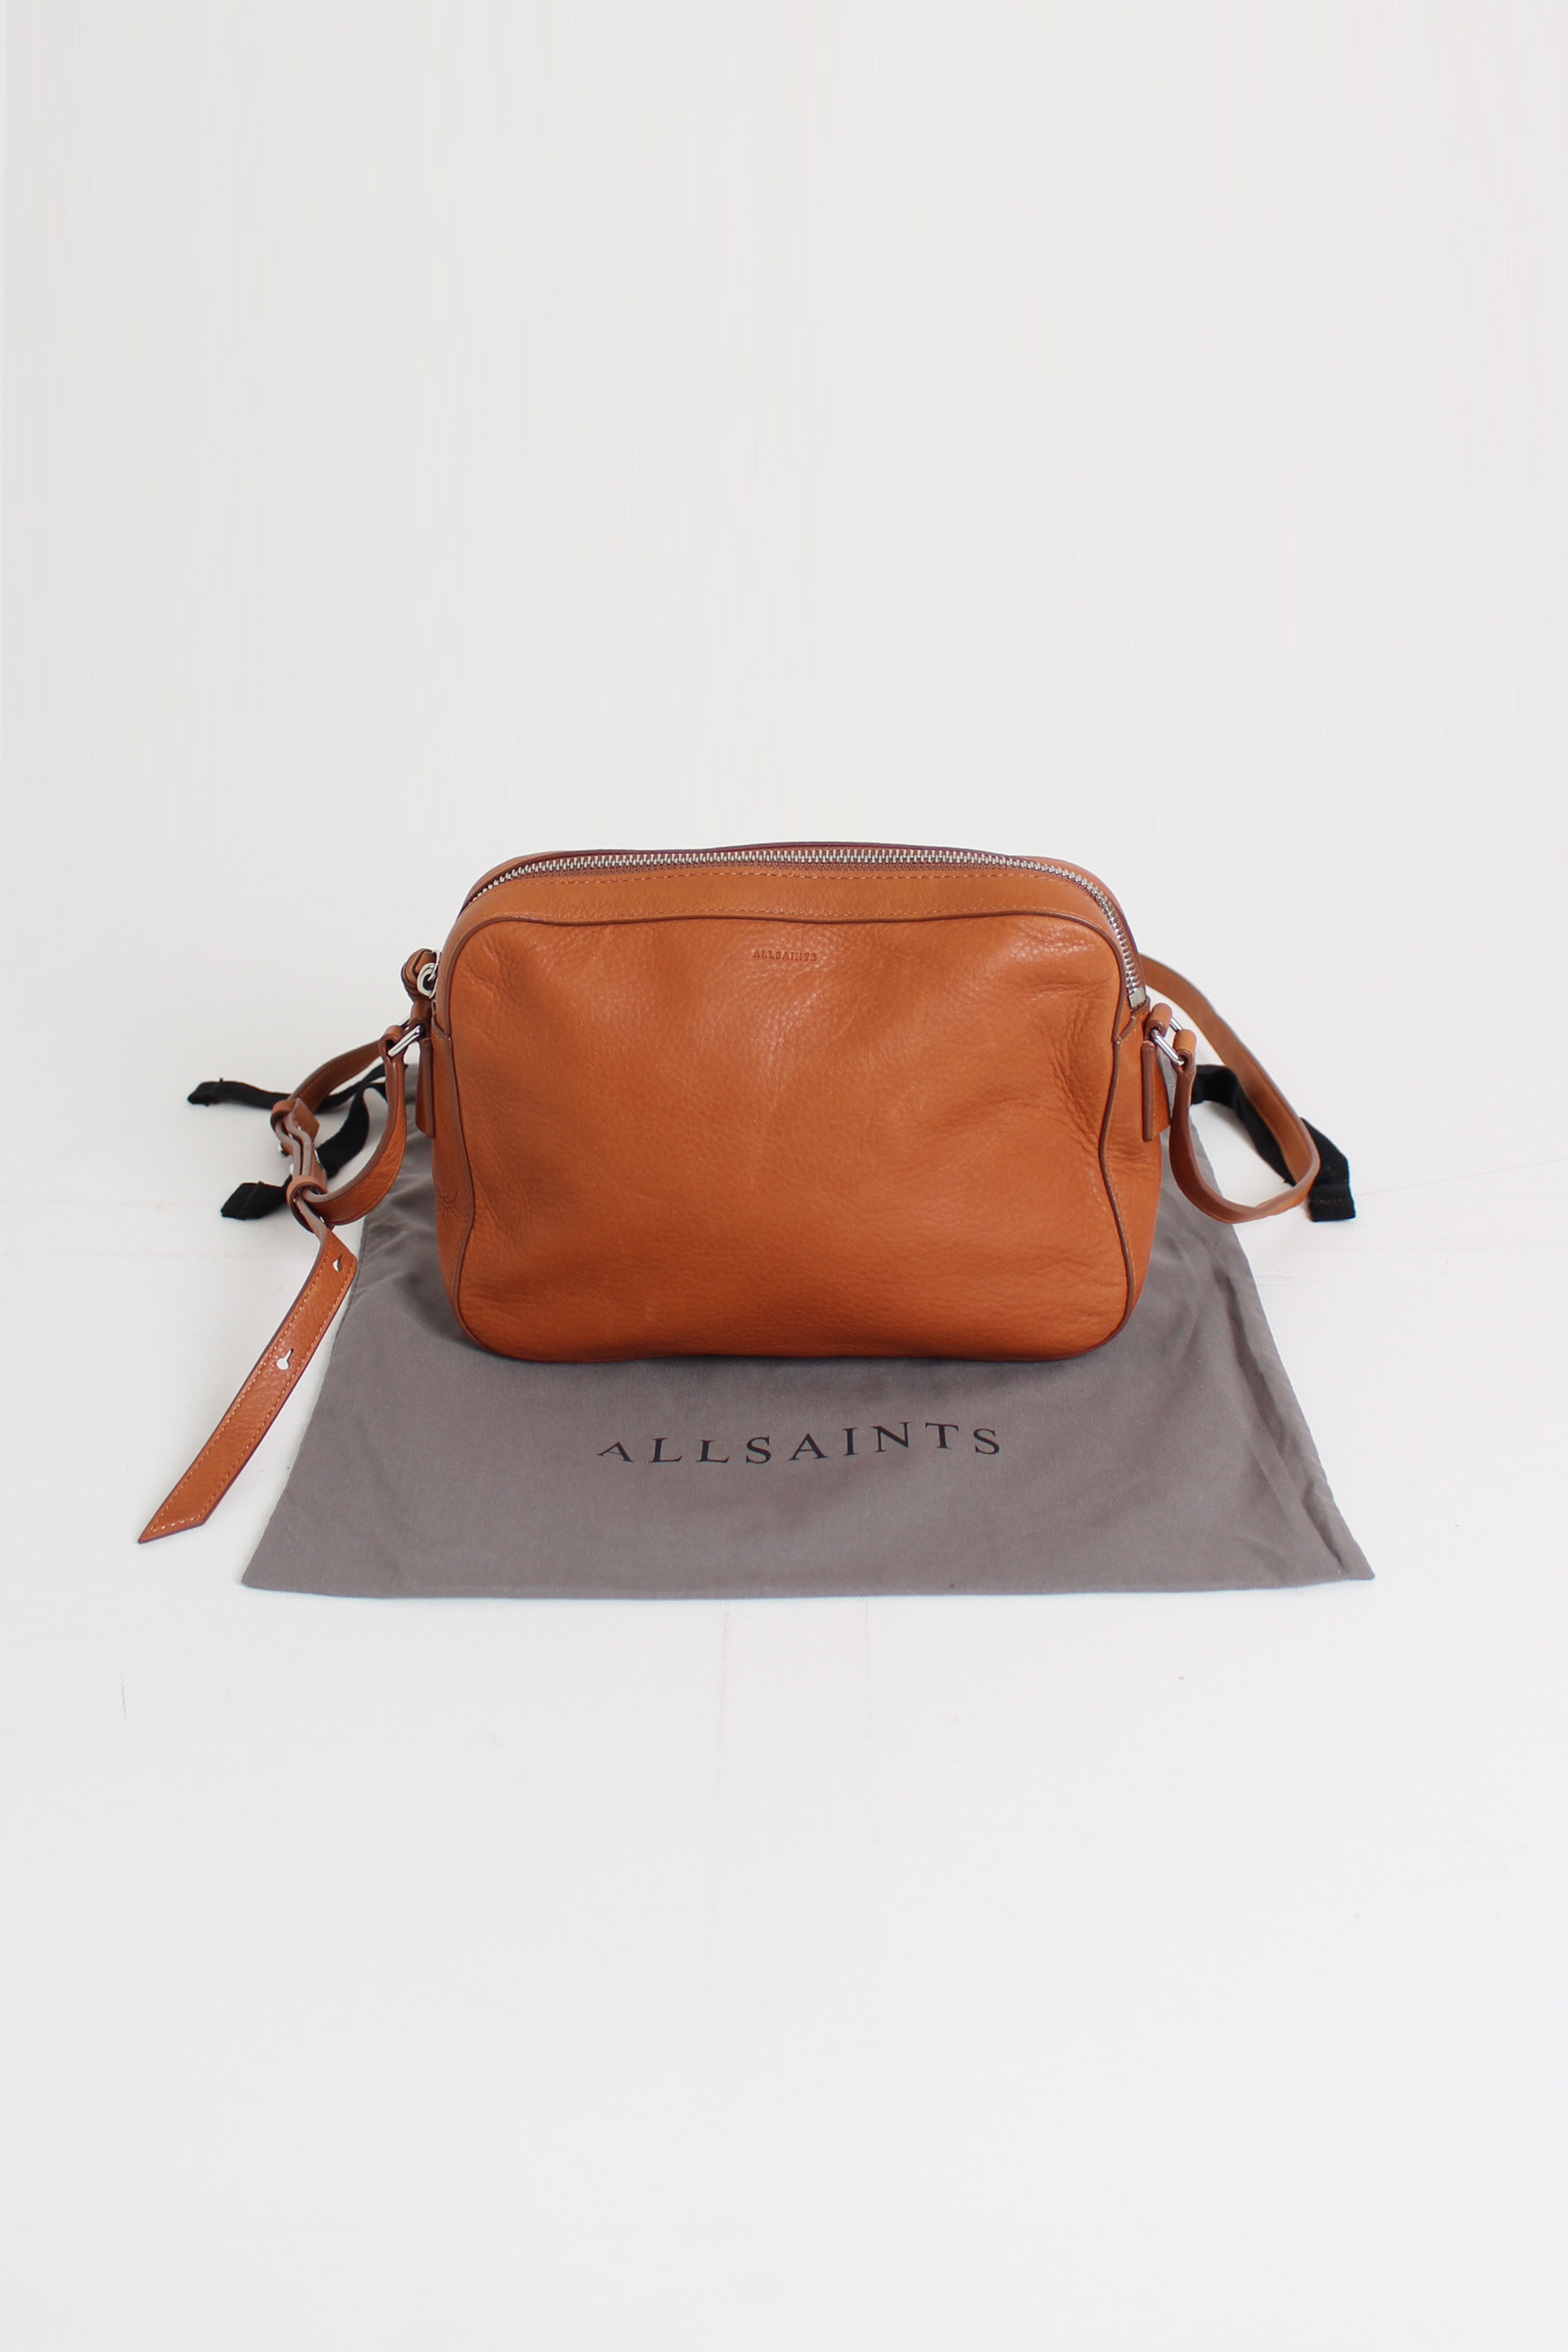 ALLSAINTS shoulder bag